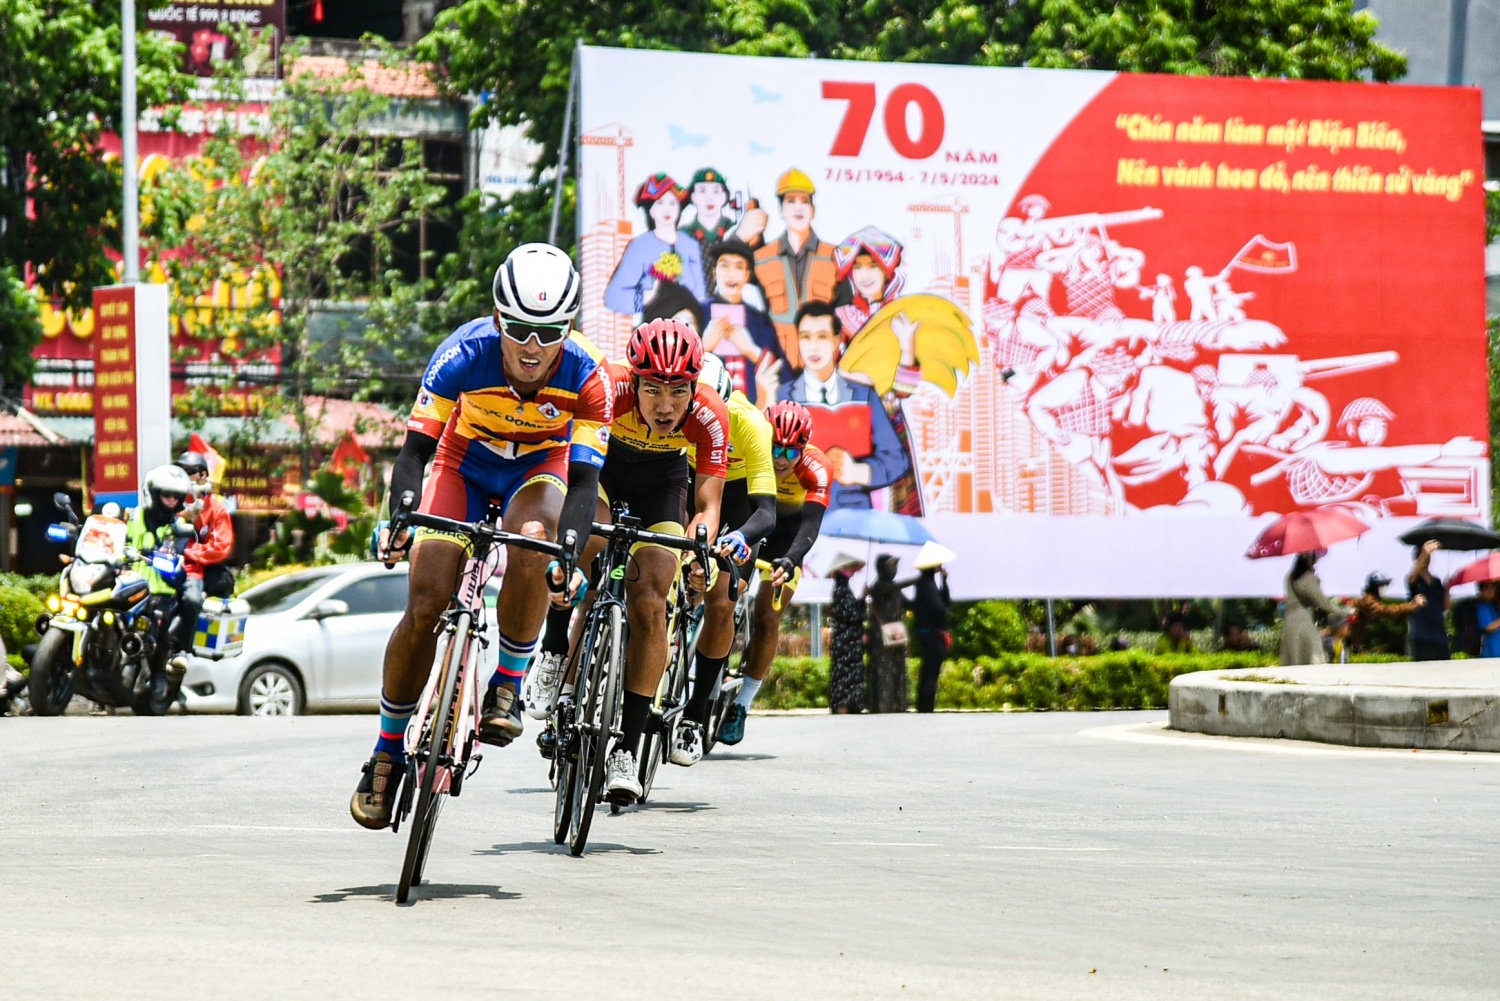 Tay đua Phạm Lê Xuân Lộc giành lại Áo vàng tại chặng 4 cuộc đua xe đạp về Điện Biên Phủ